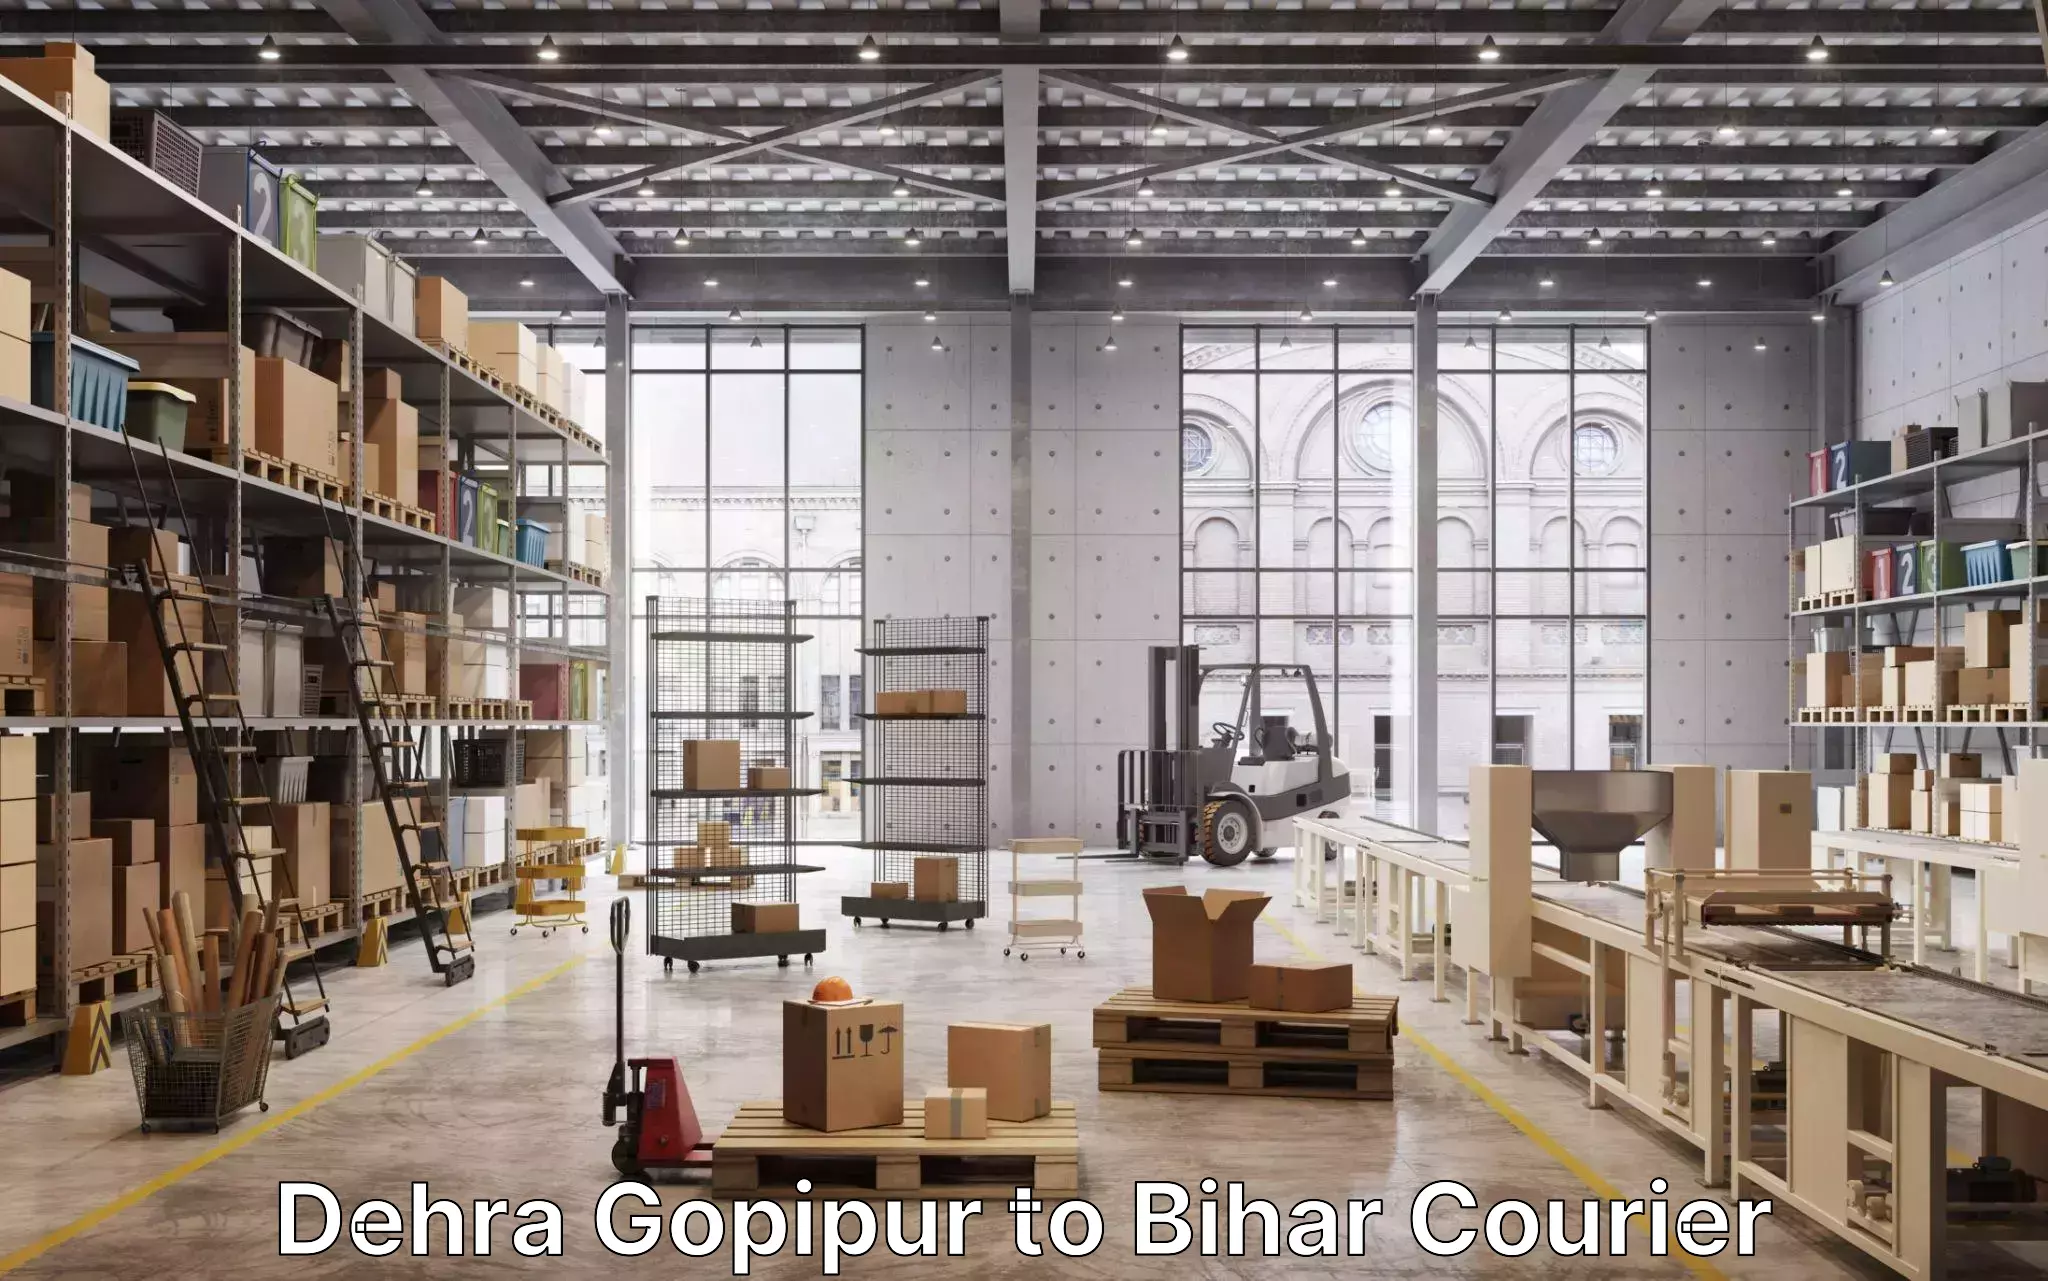 Furniture moving plans Dehra Gopipur to Bharwara